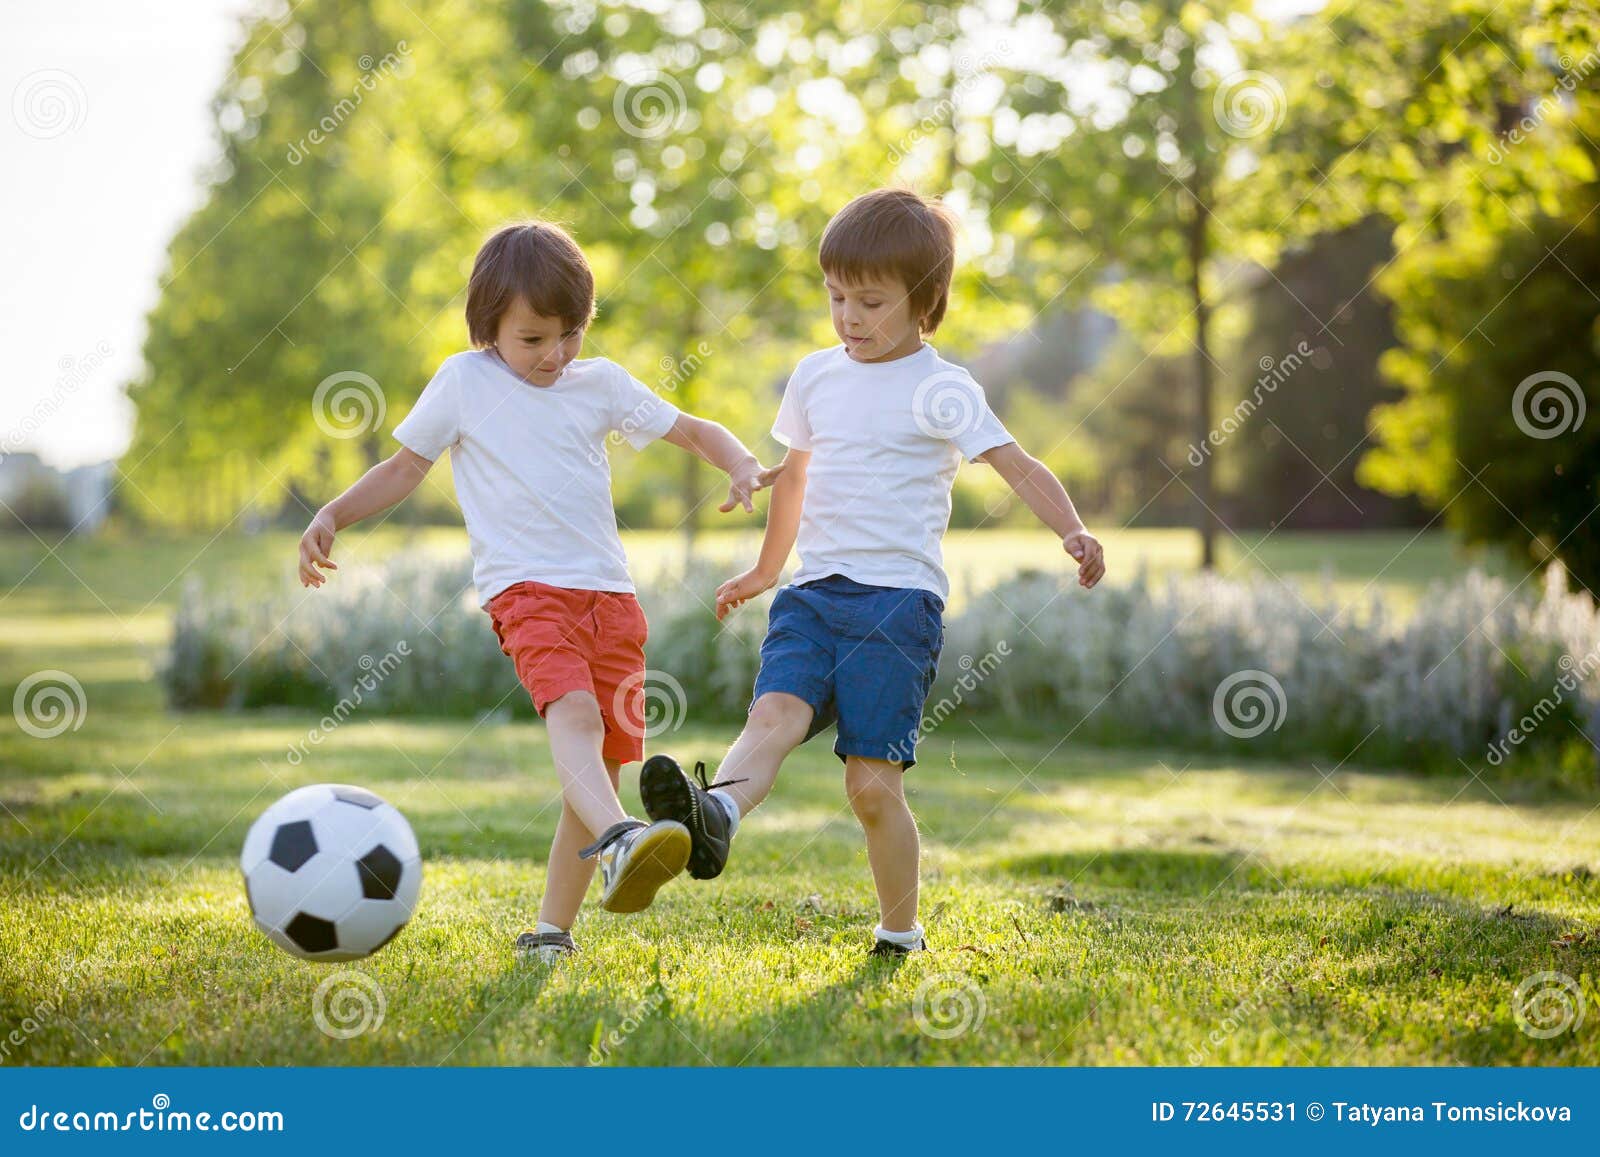 Гулять в футбол играть. Дети играющие в мяч. Мальчик играет в мяч. Мальчики играющие в мяч. Подростки играют в мяч.